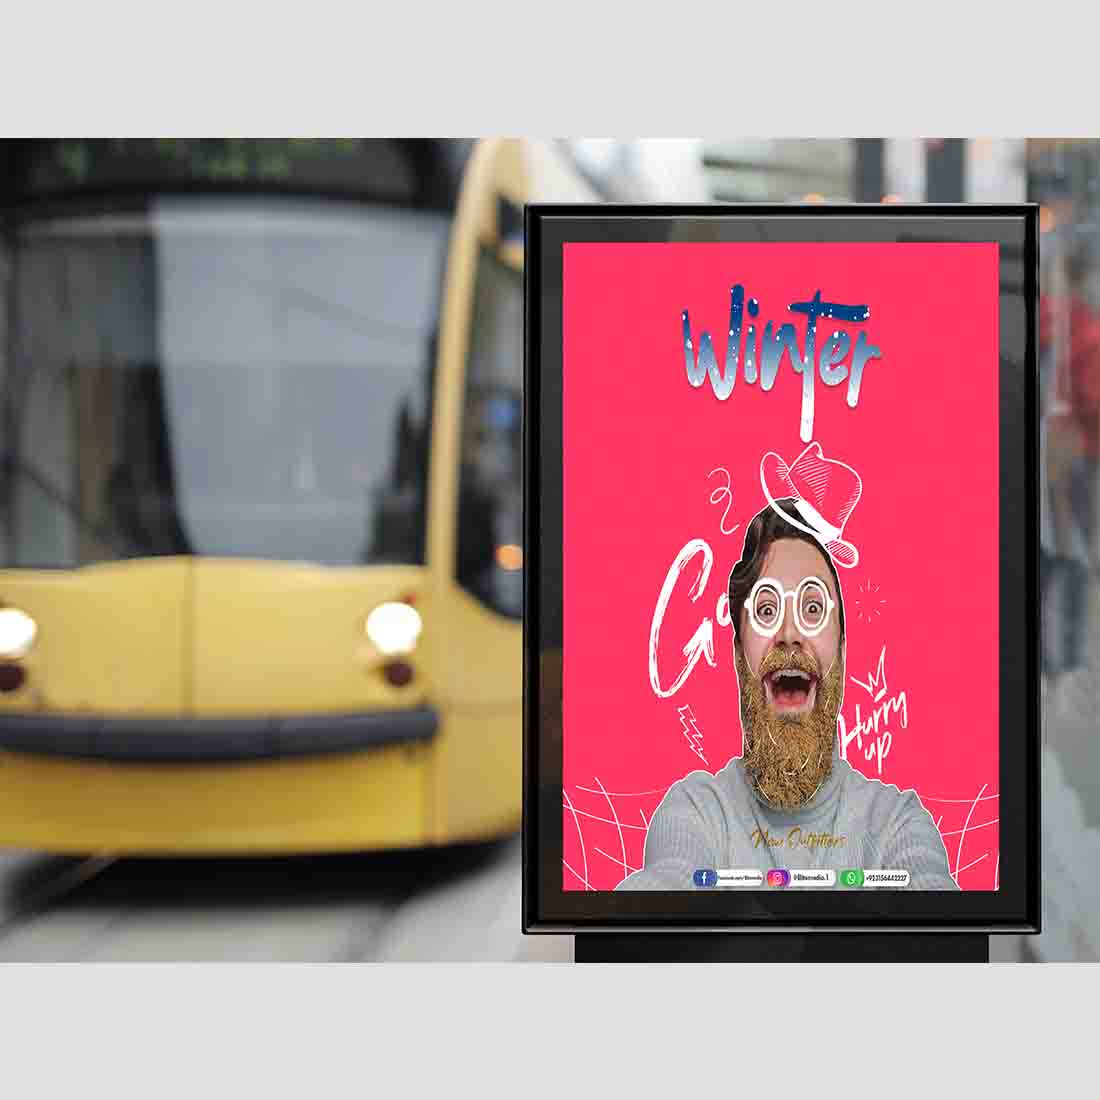 Outdoor Bus Stop Advertisement Vertical Billboard Poster Mockup PSD 2018 copy